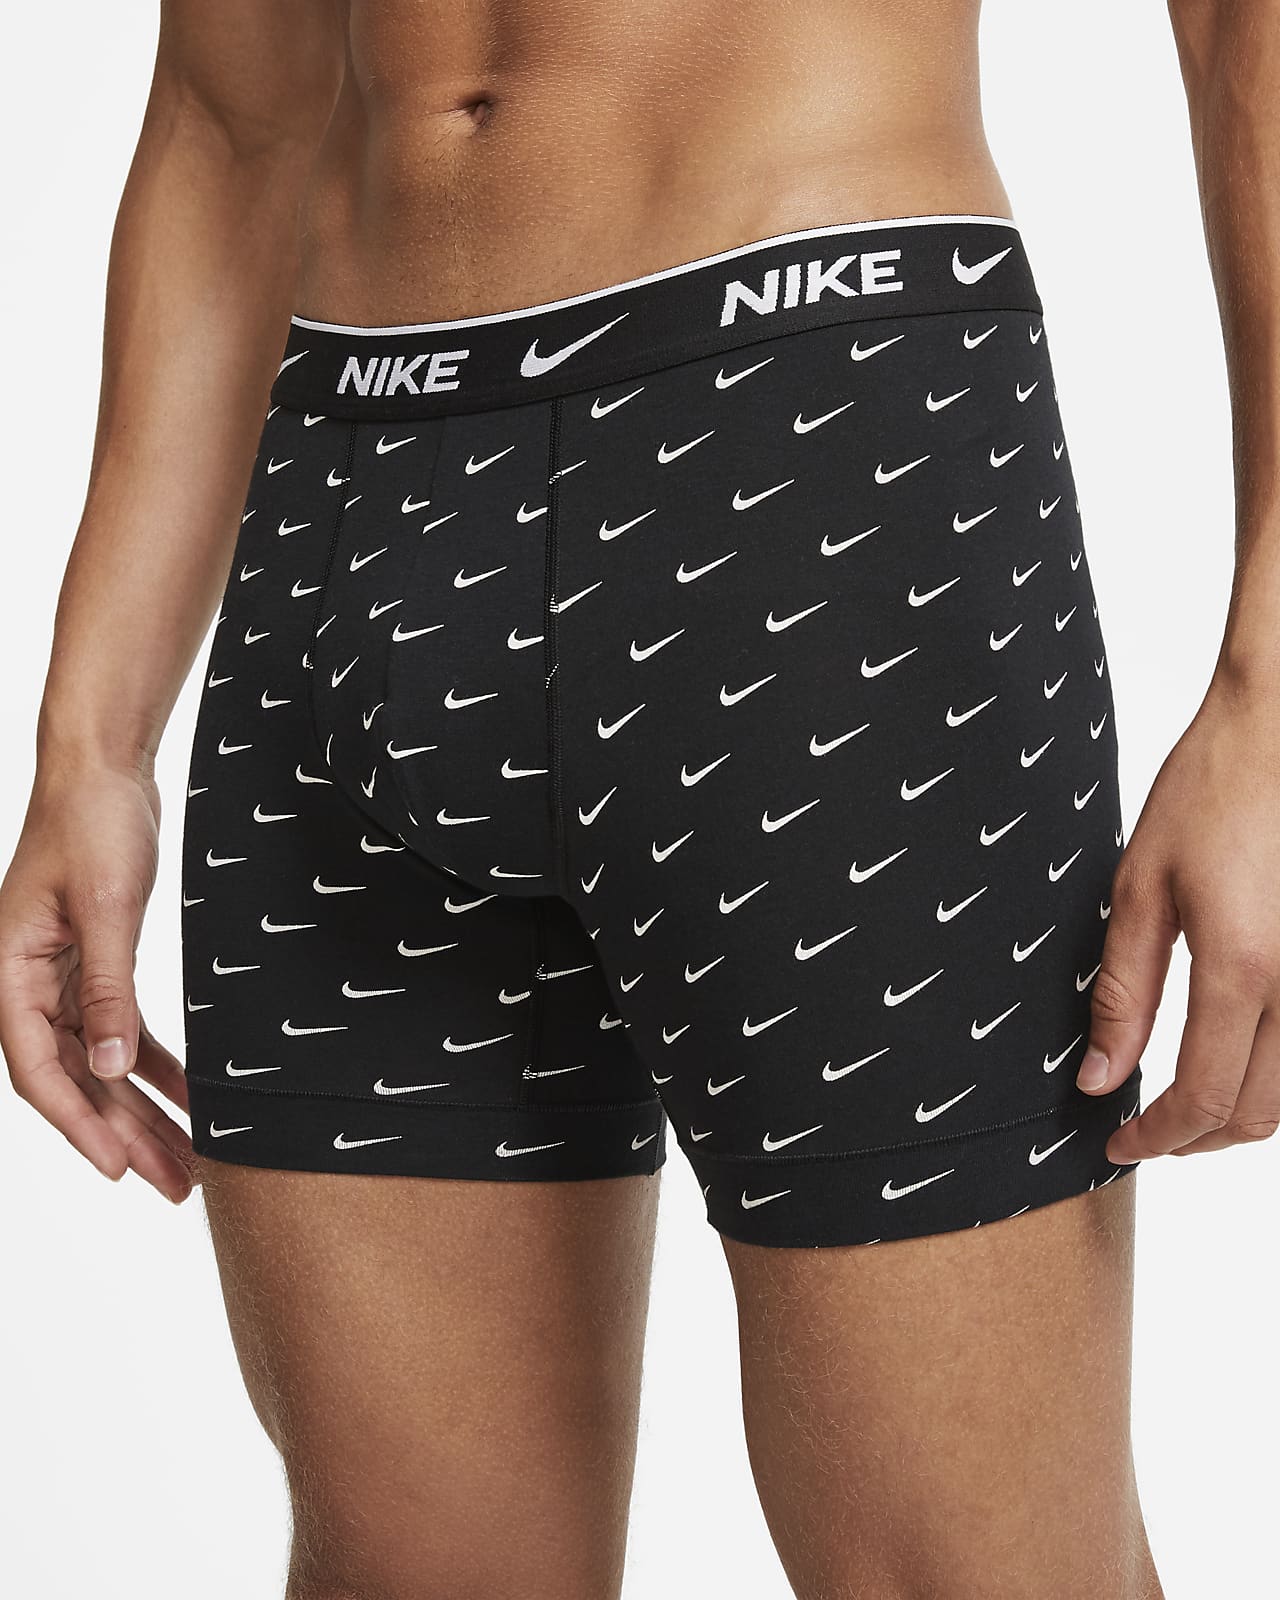 nike men's underwear sale